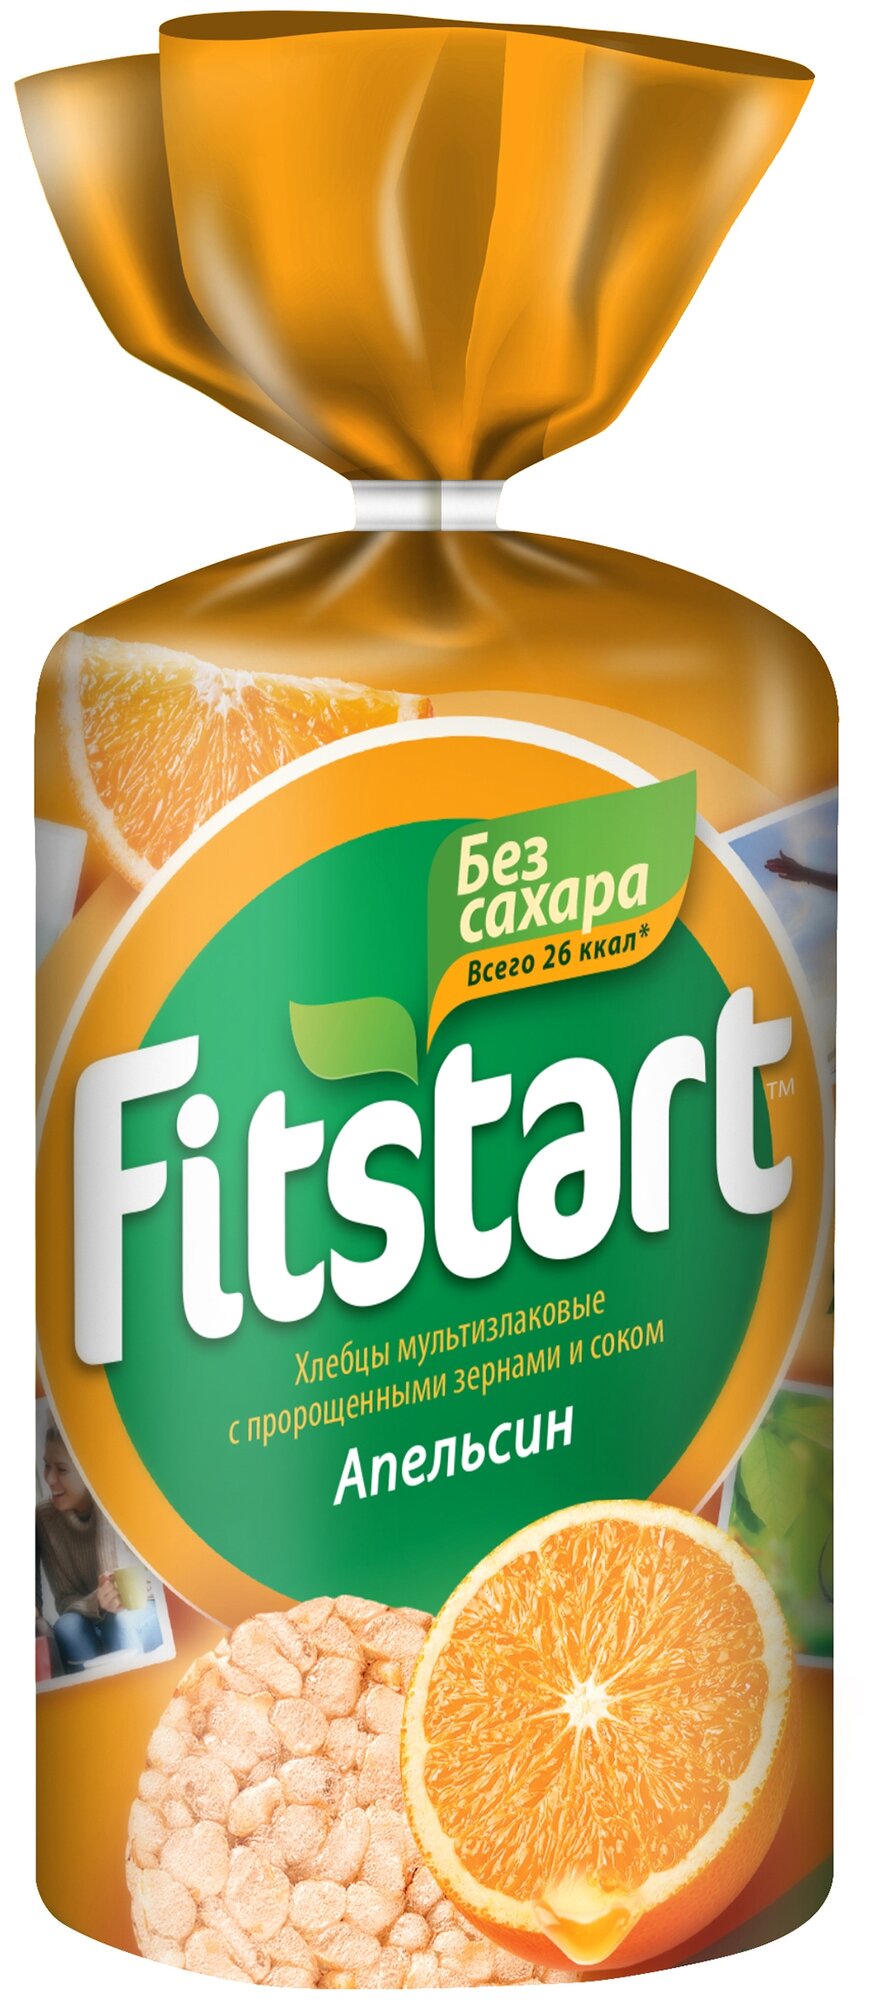 Хлебцы мультизлаковые Fitstart с пророщенными зернами и соком Апельсин 100 г